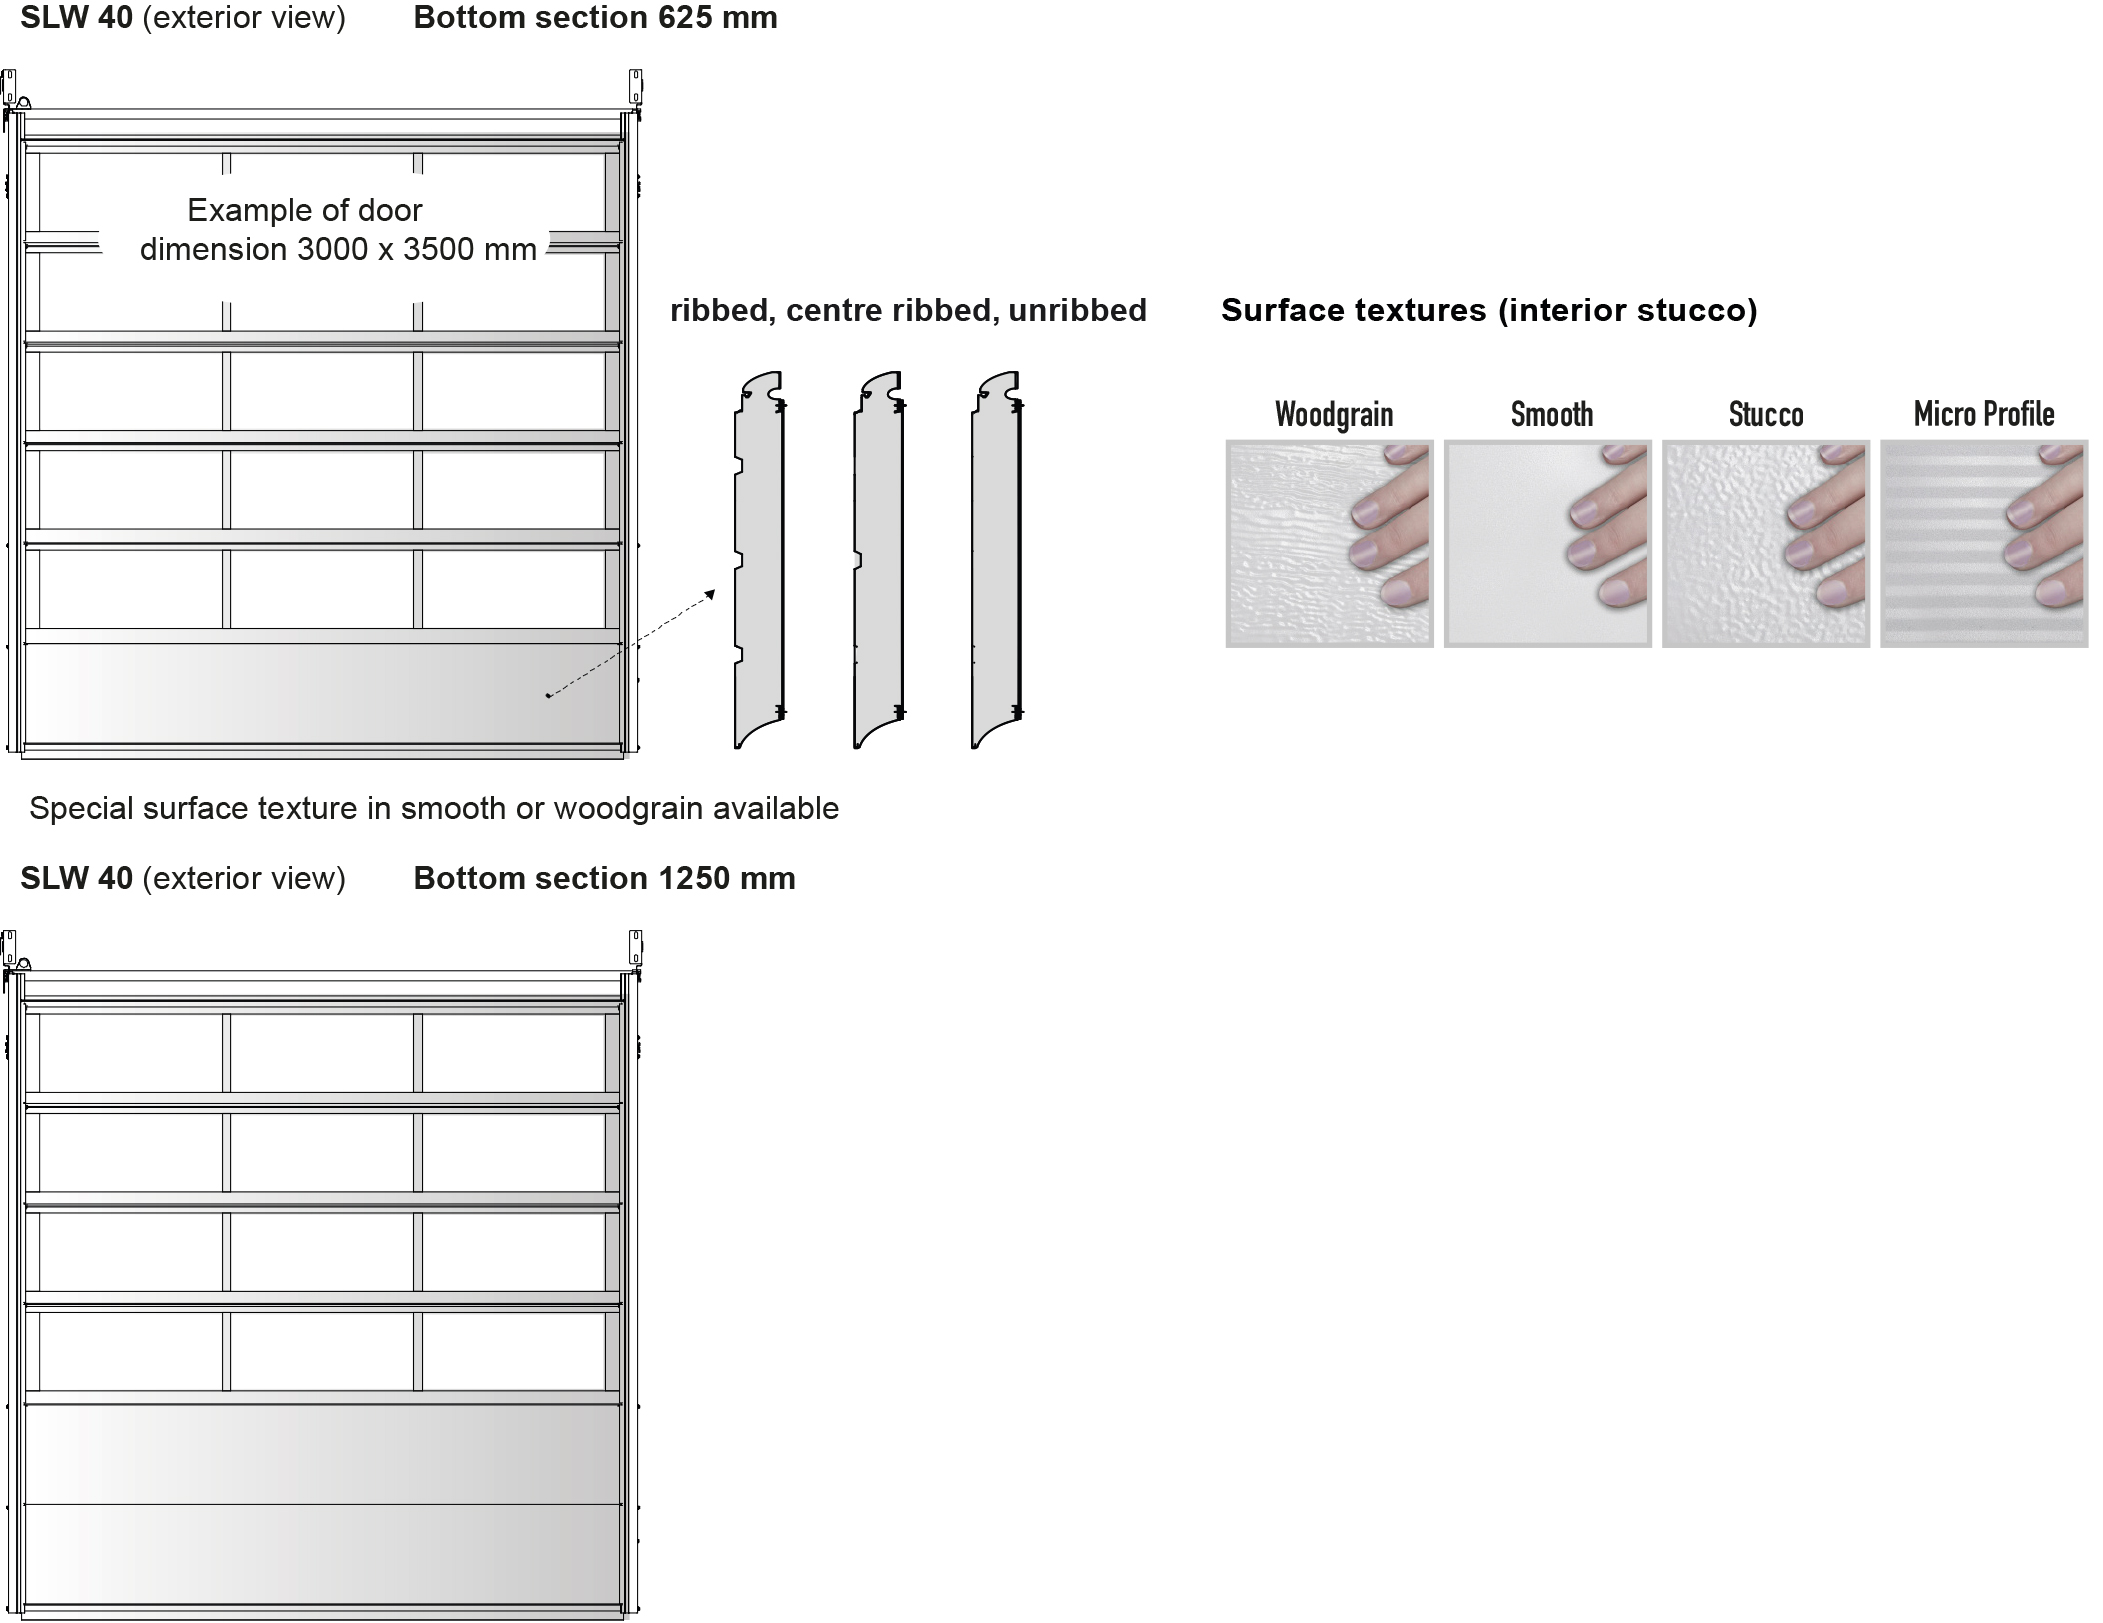 Sectional industrial door panel options